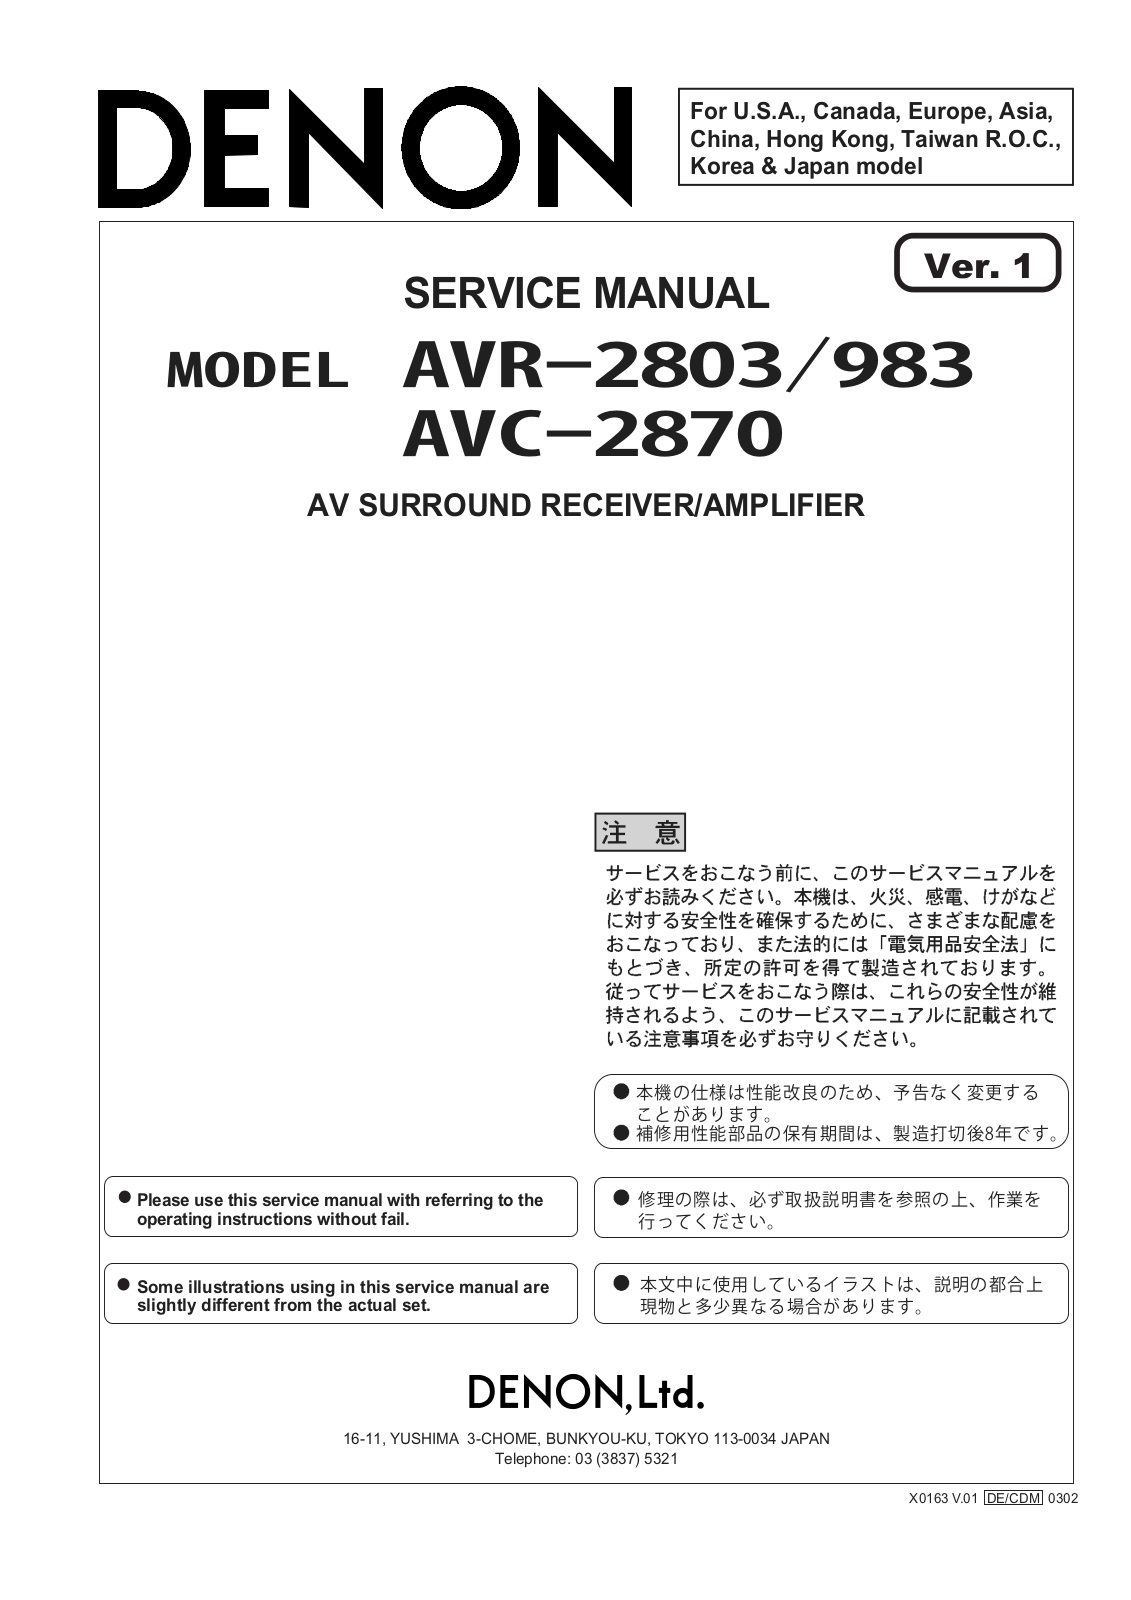 Denon AVR-2803, AVR-2870 Service Manual